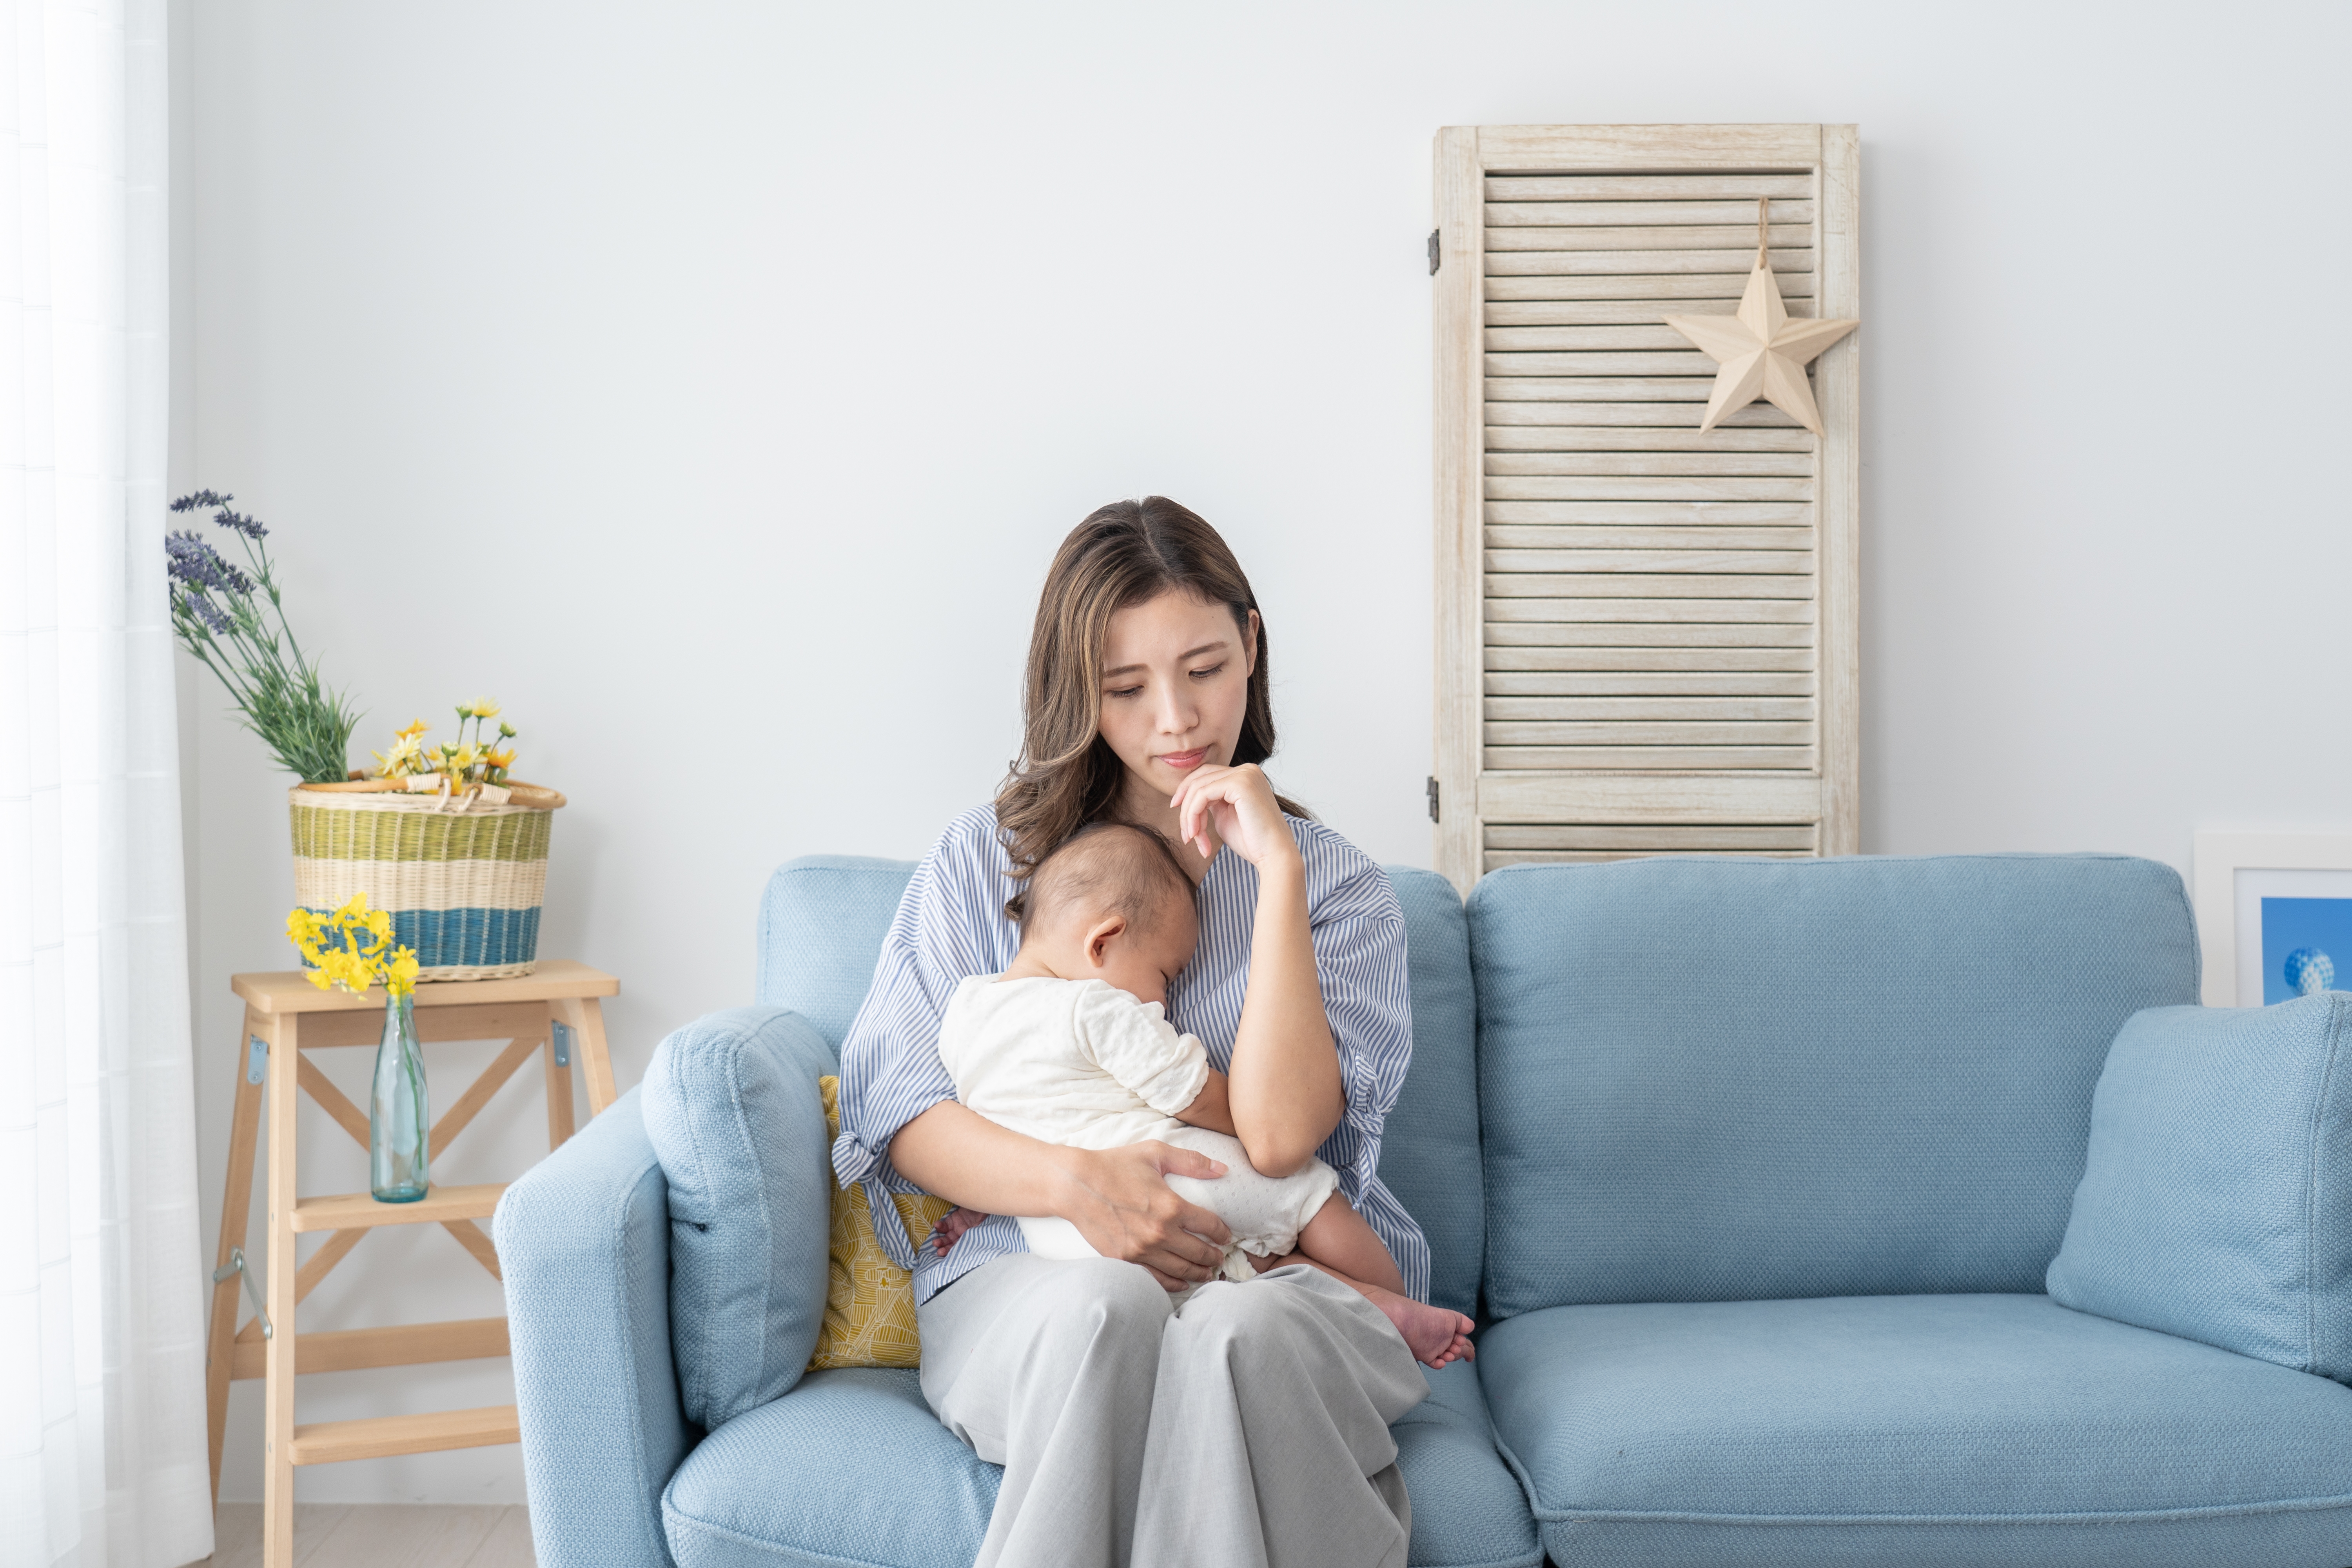 Une femme assise avec un bébé | Source : Shutterstock